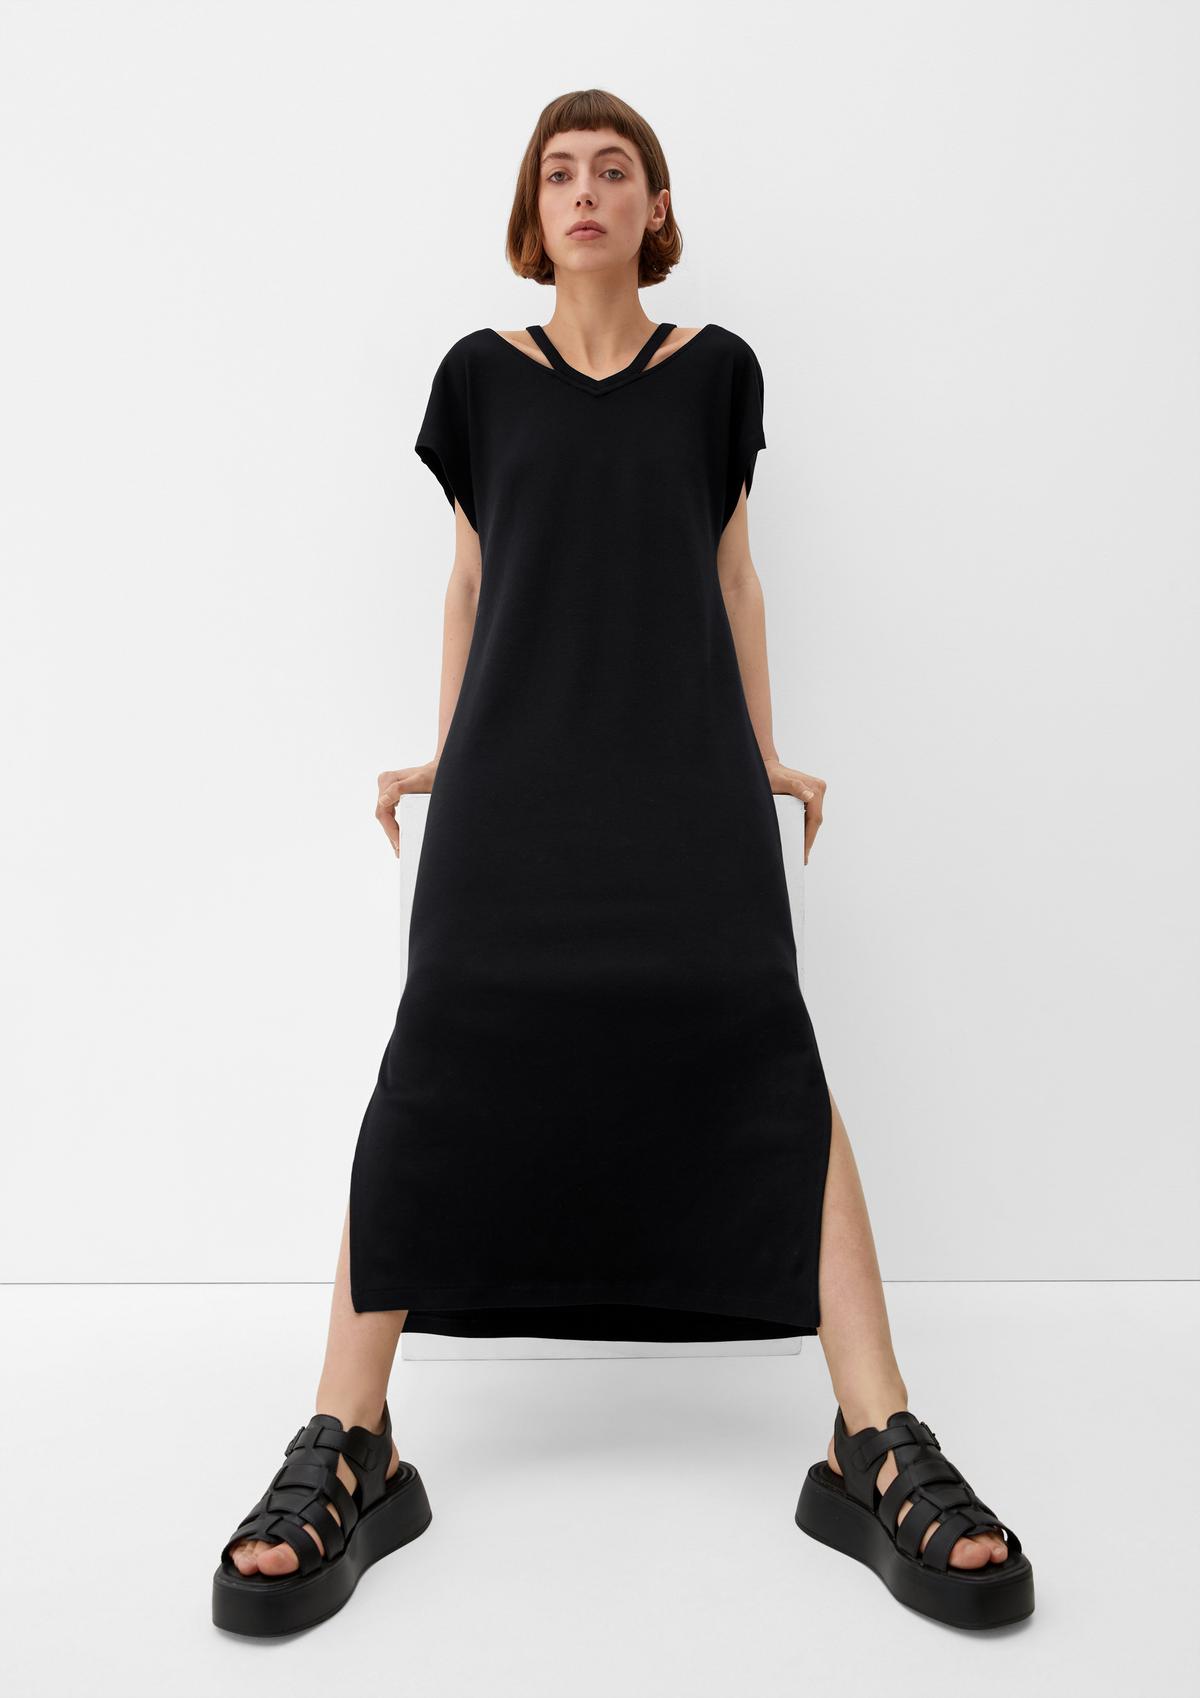 Shop maxi dresses for women online now